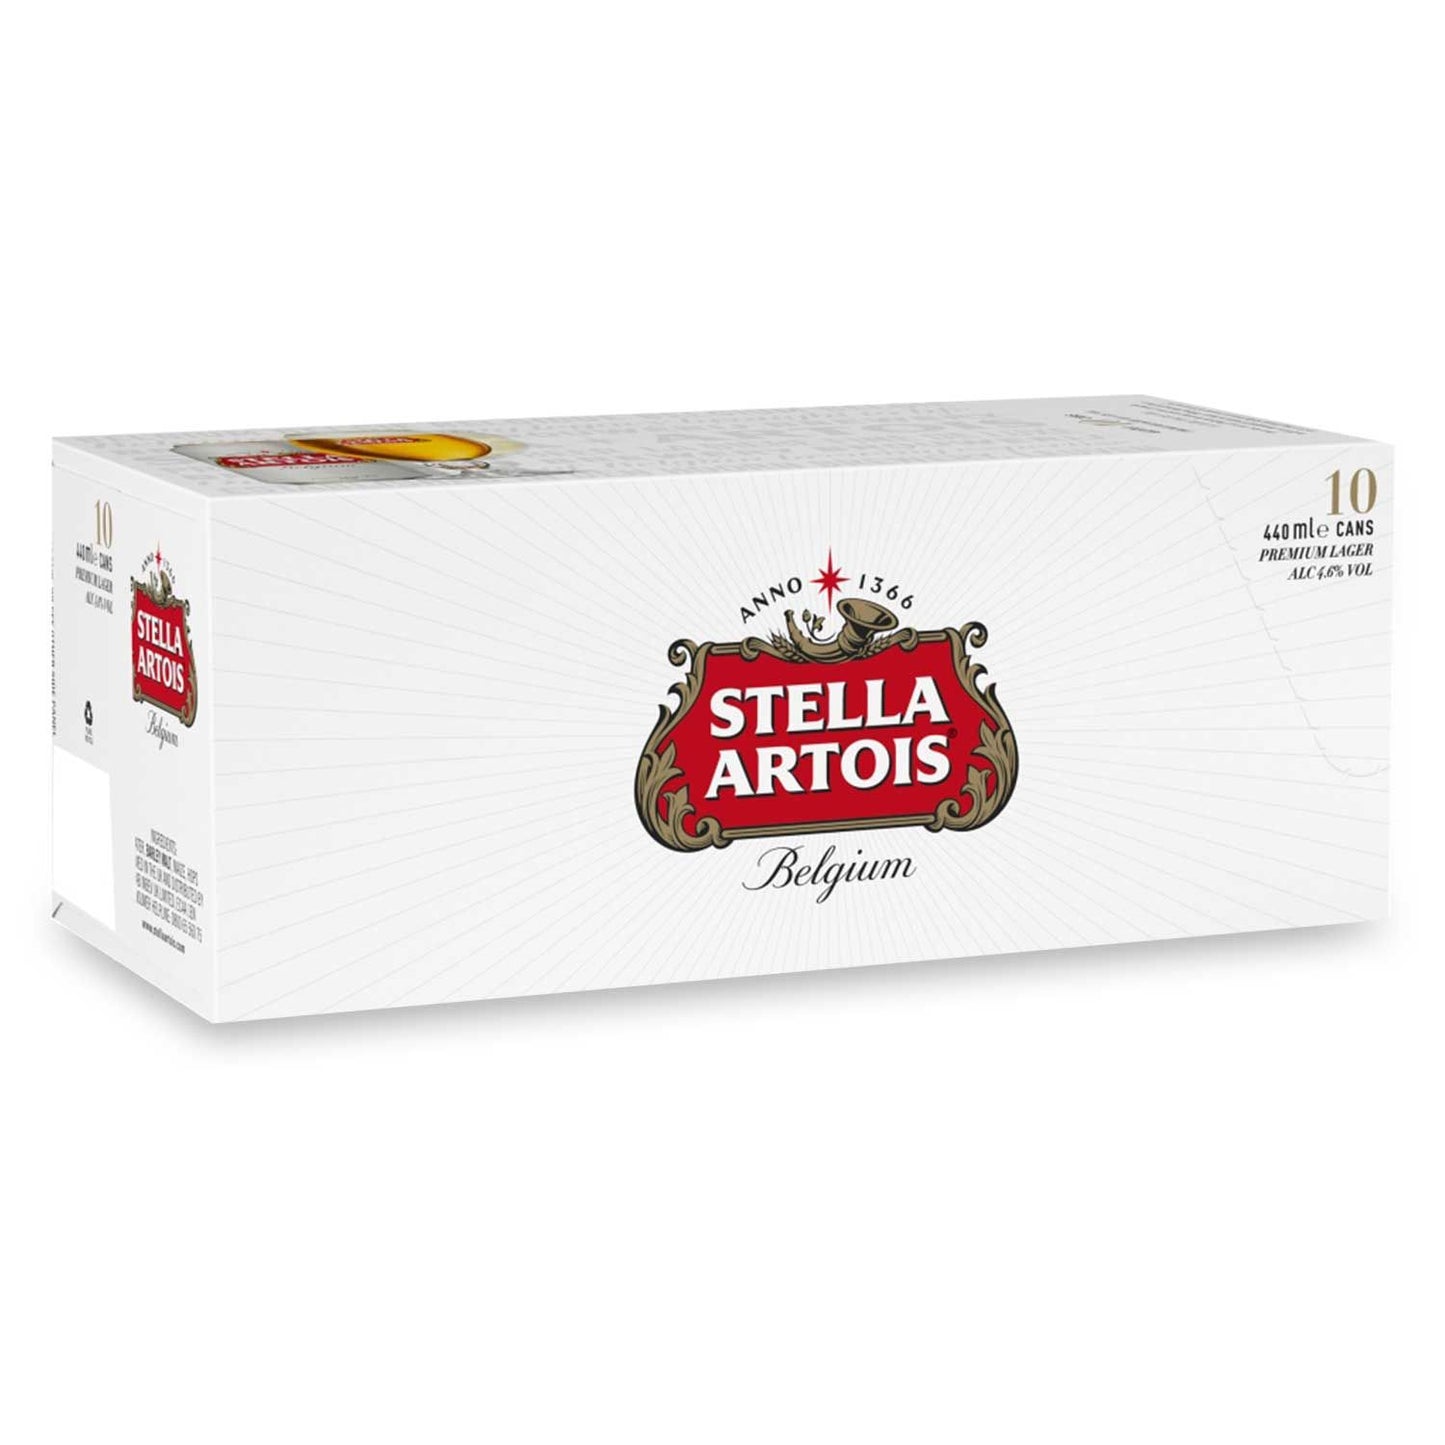 Stella Artois Belgium Premium Lager Beer Cans 10x440ml